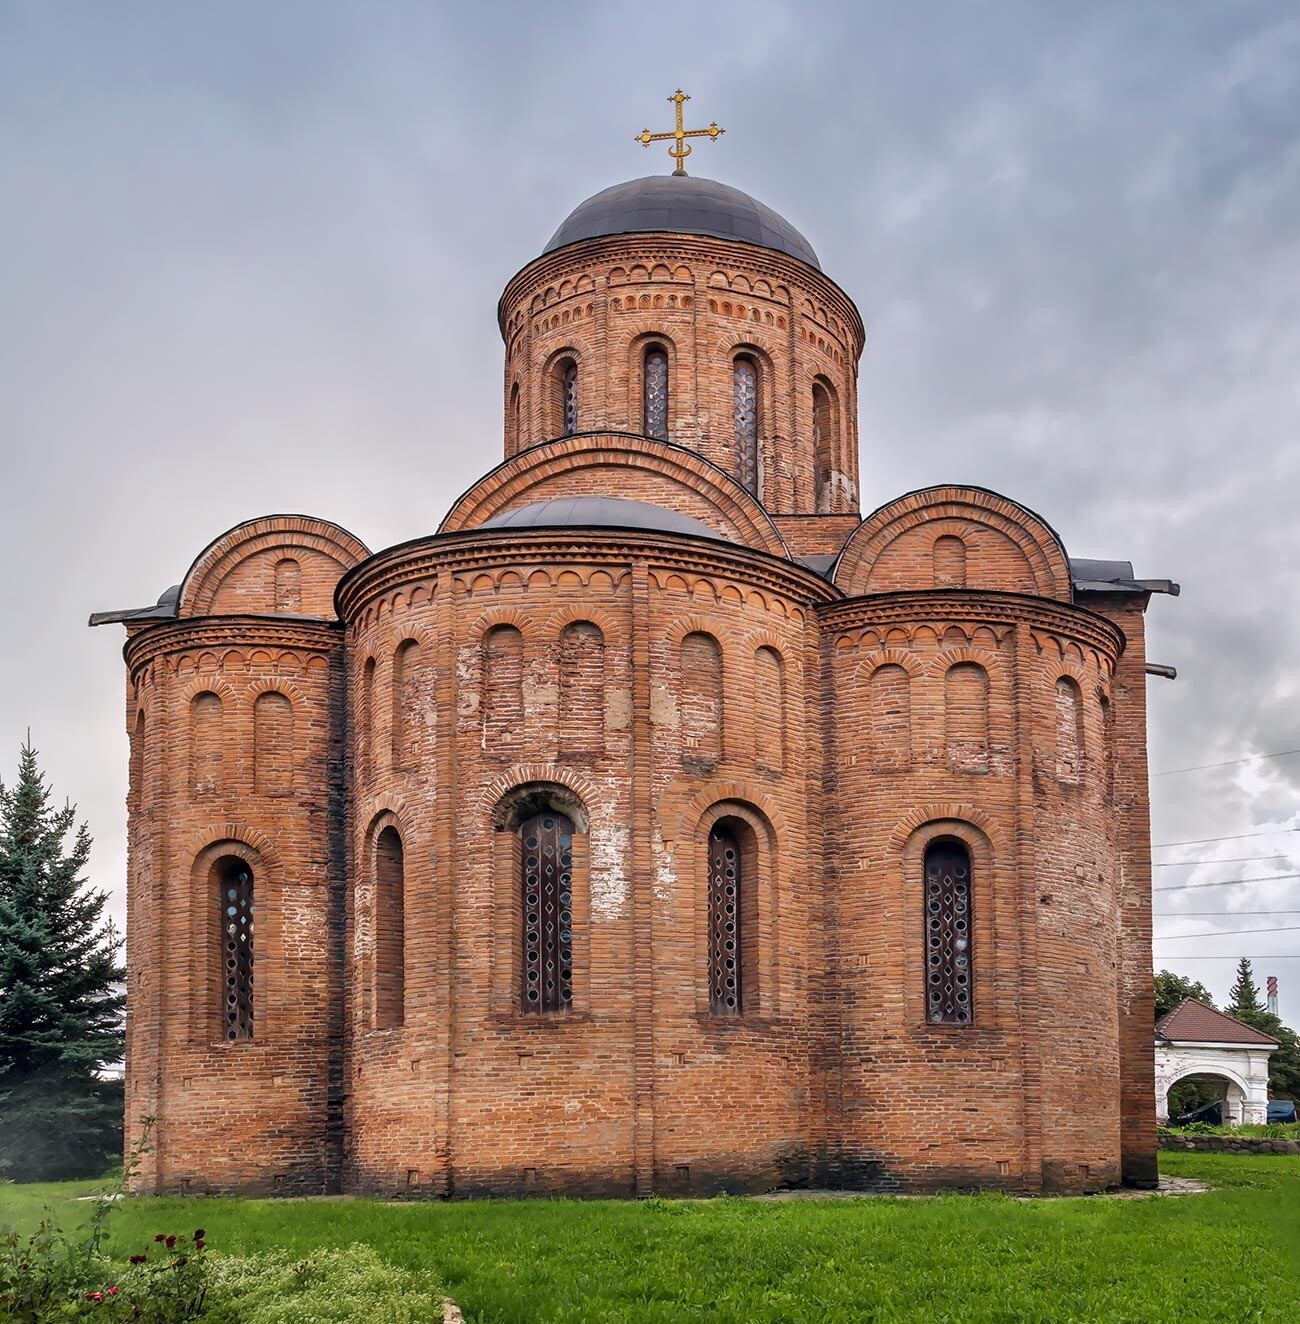 Die Peter-und-Paul-Kirche, Smolensk, 1146. Eine der wenigen russischen Kirchen, die aus der Zeit vor der mongolisch-tatarischen Invasion stammen.